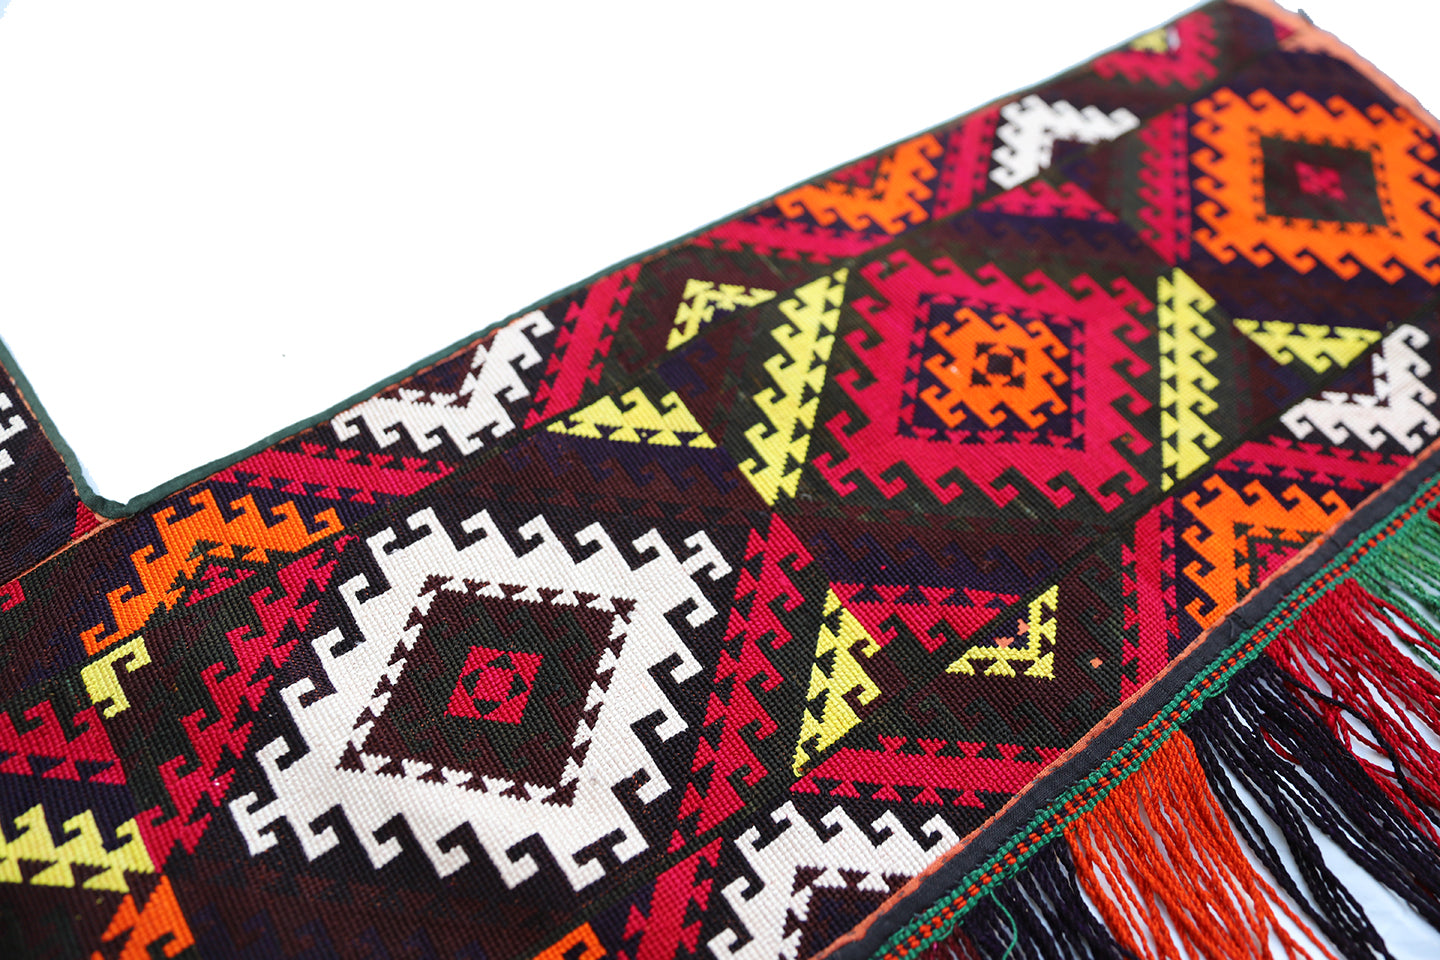 2'x4' Uzbek Yurt Textile Decoration